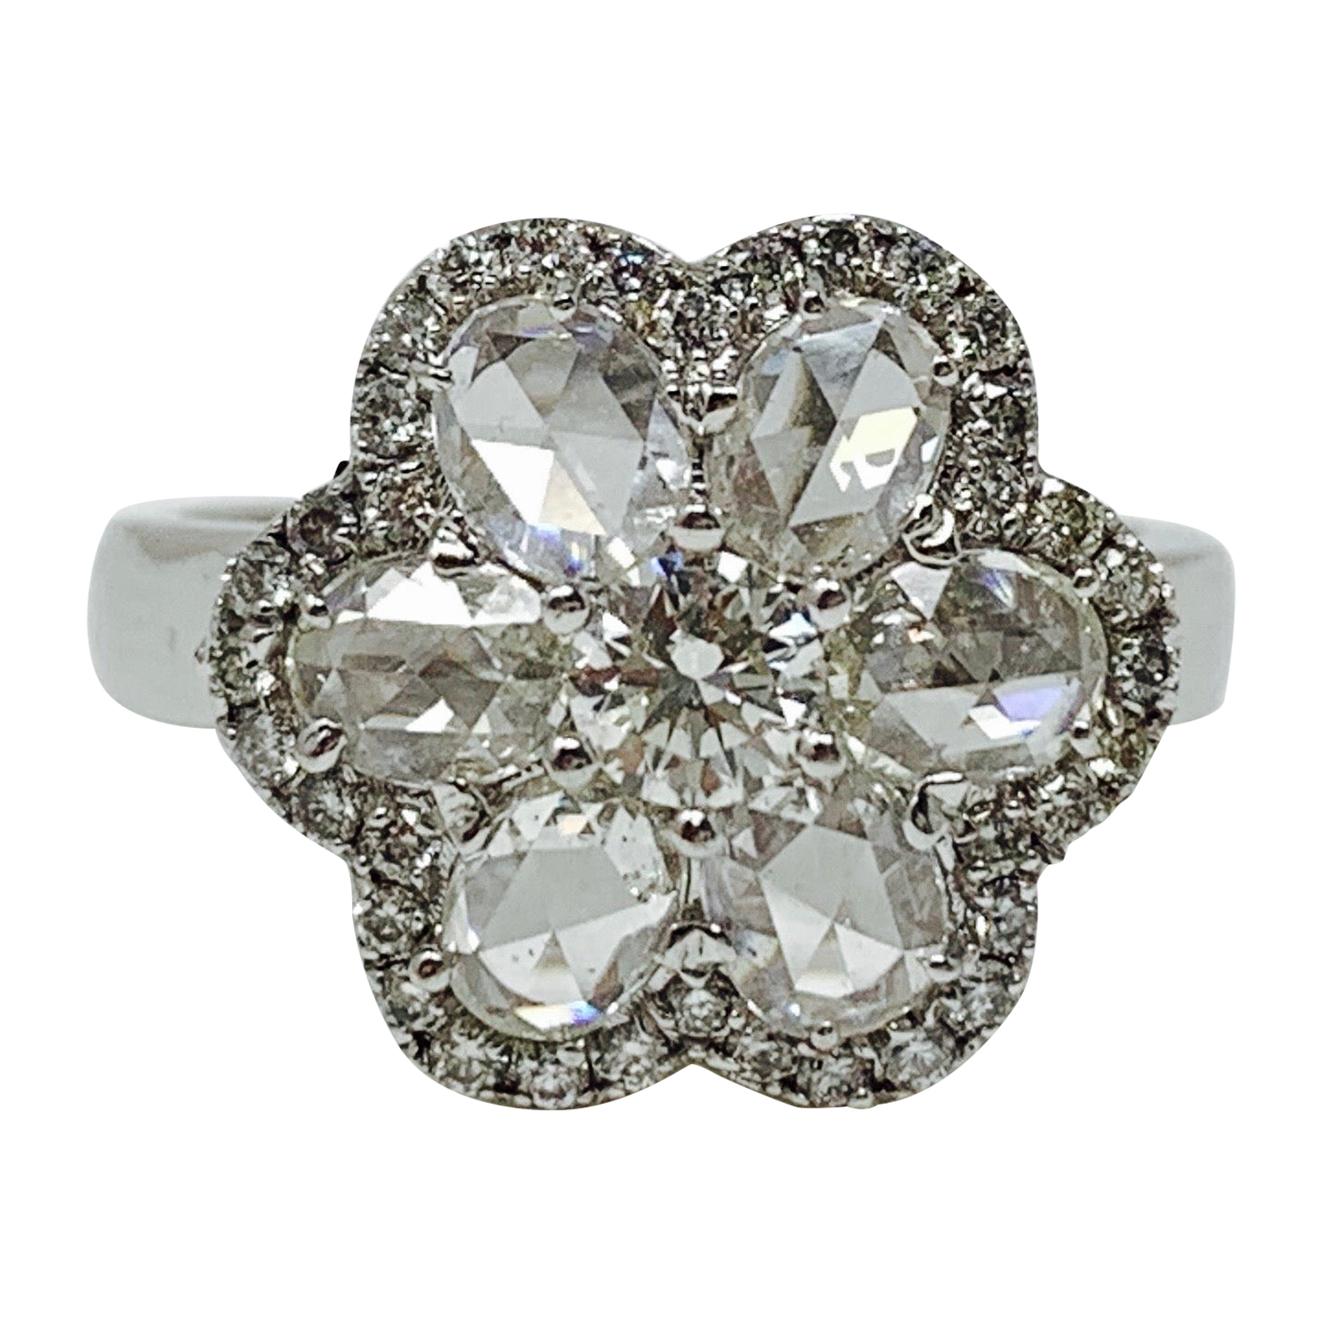 White Rose Cut Diamond Engagement Ring in 18 Karat White Gold